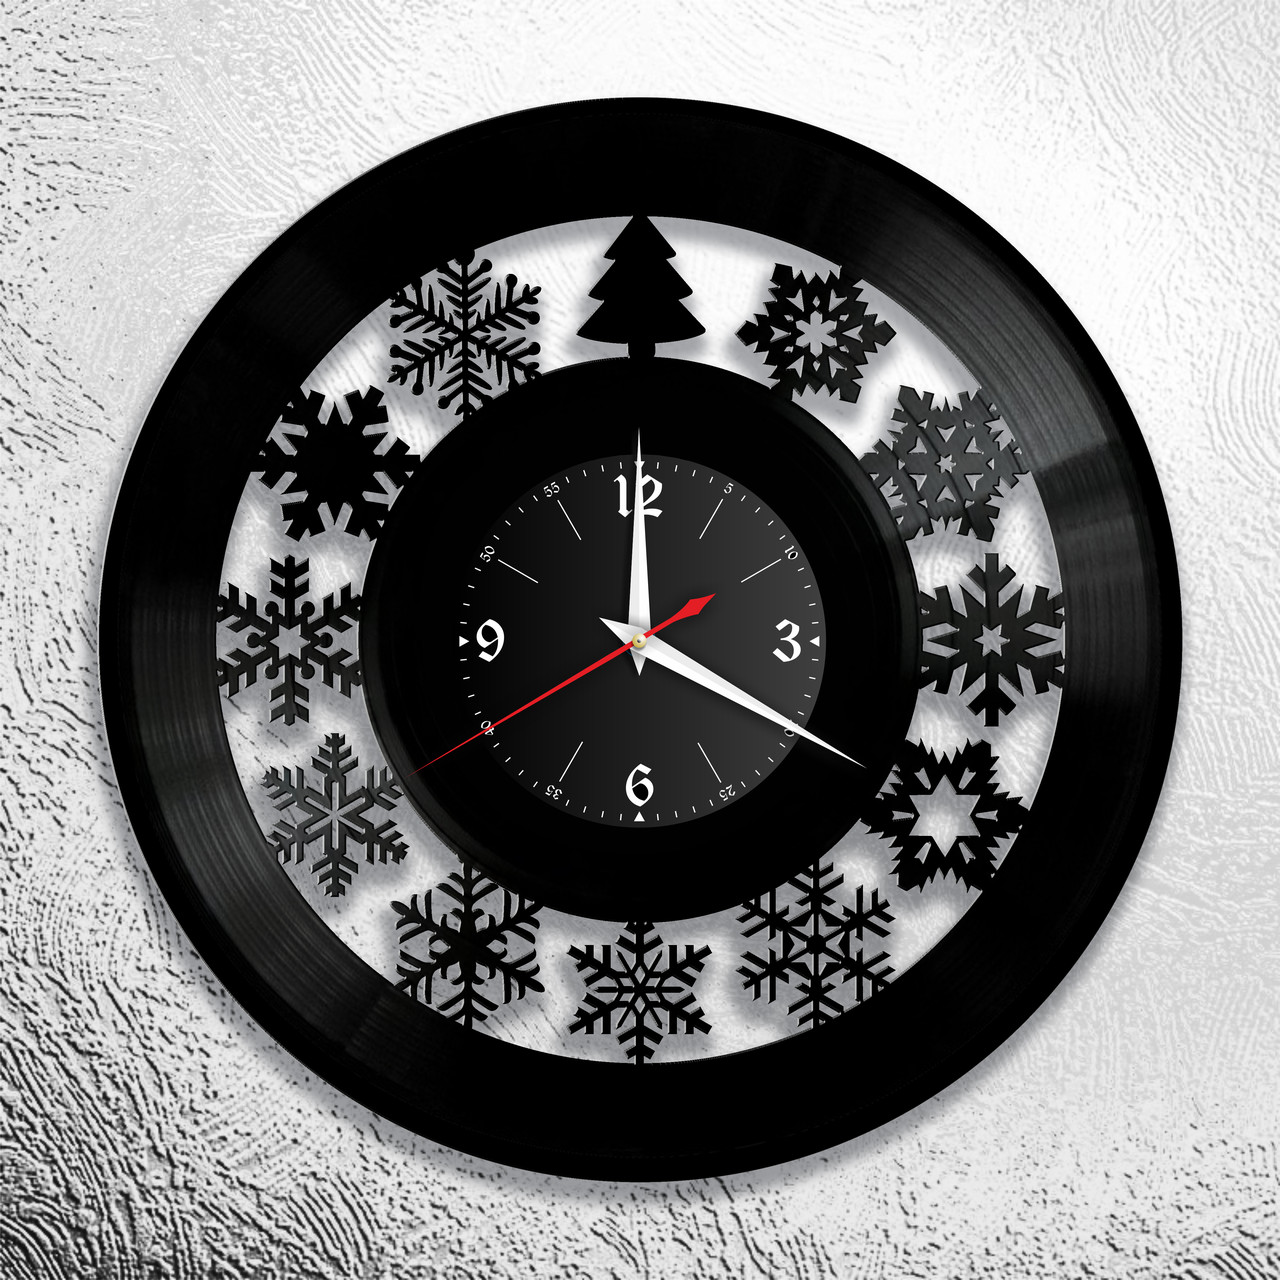 Оригинальные часы из виниловых пластинок "Новый год" версия 2